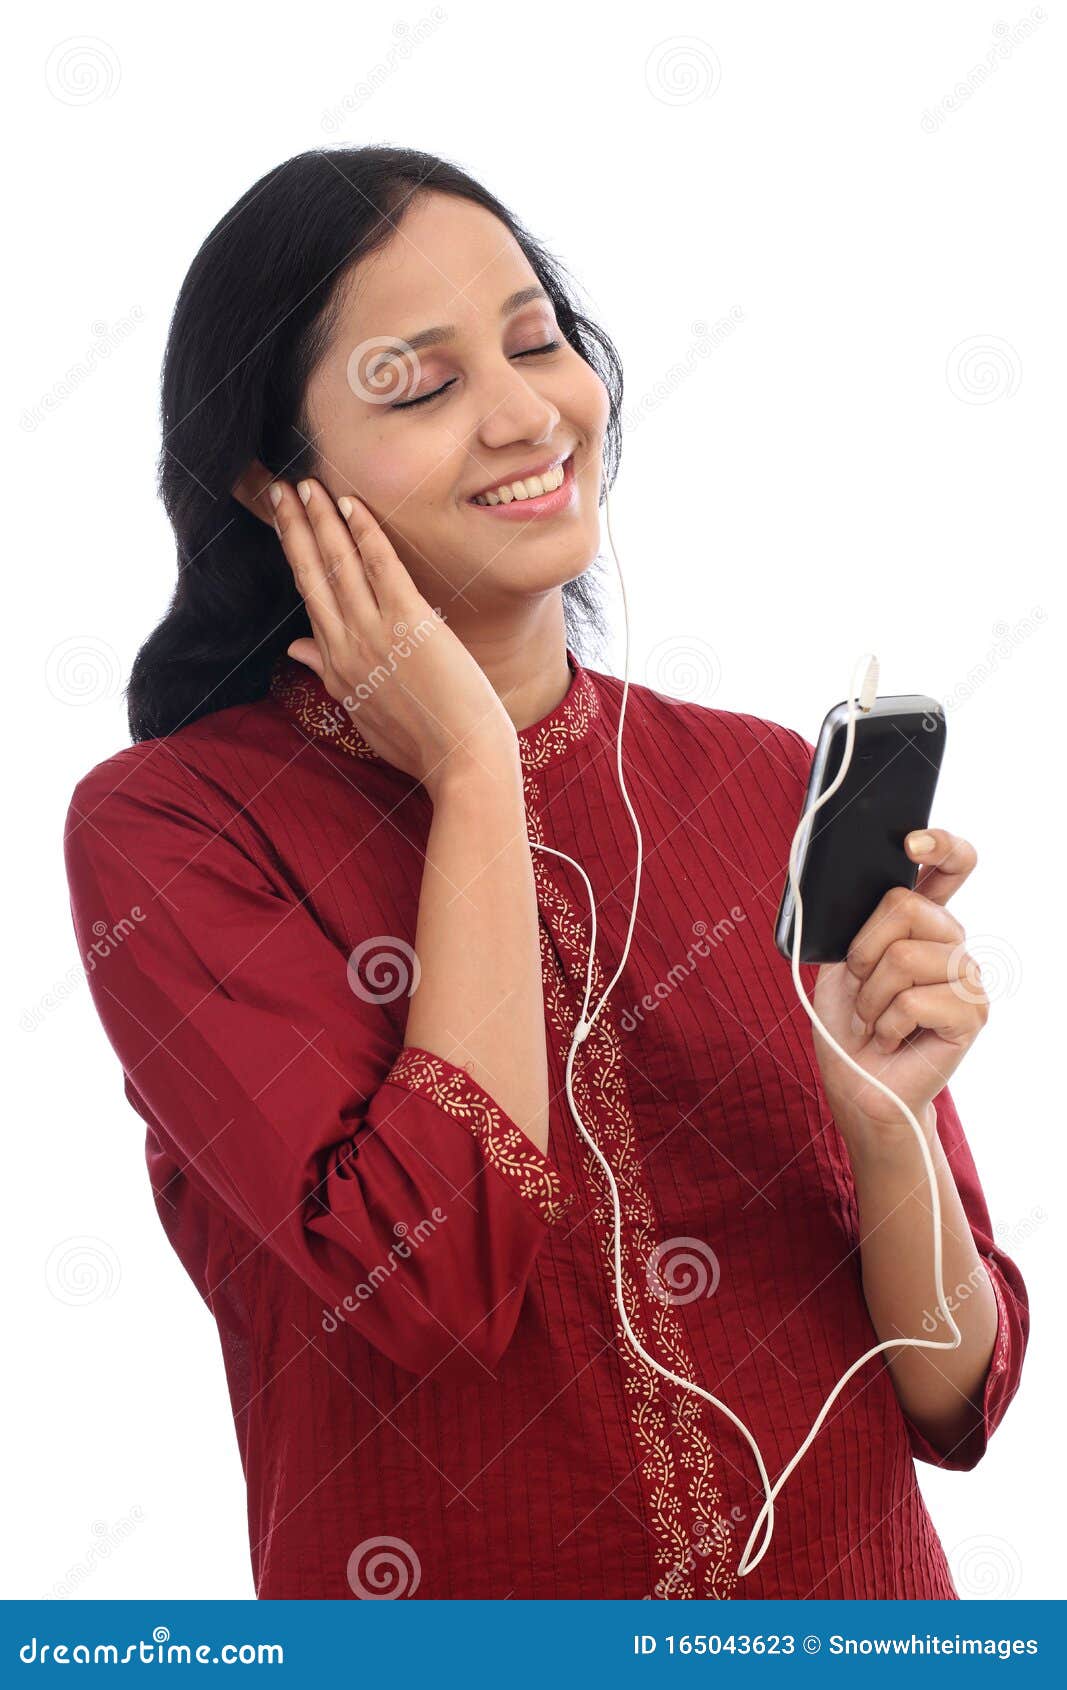 Une jeune femme heureuse jouant de la musique avec un smartphone contre le blanc